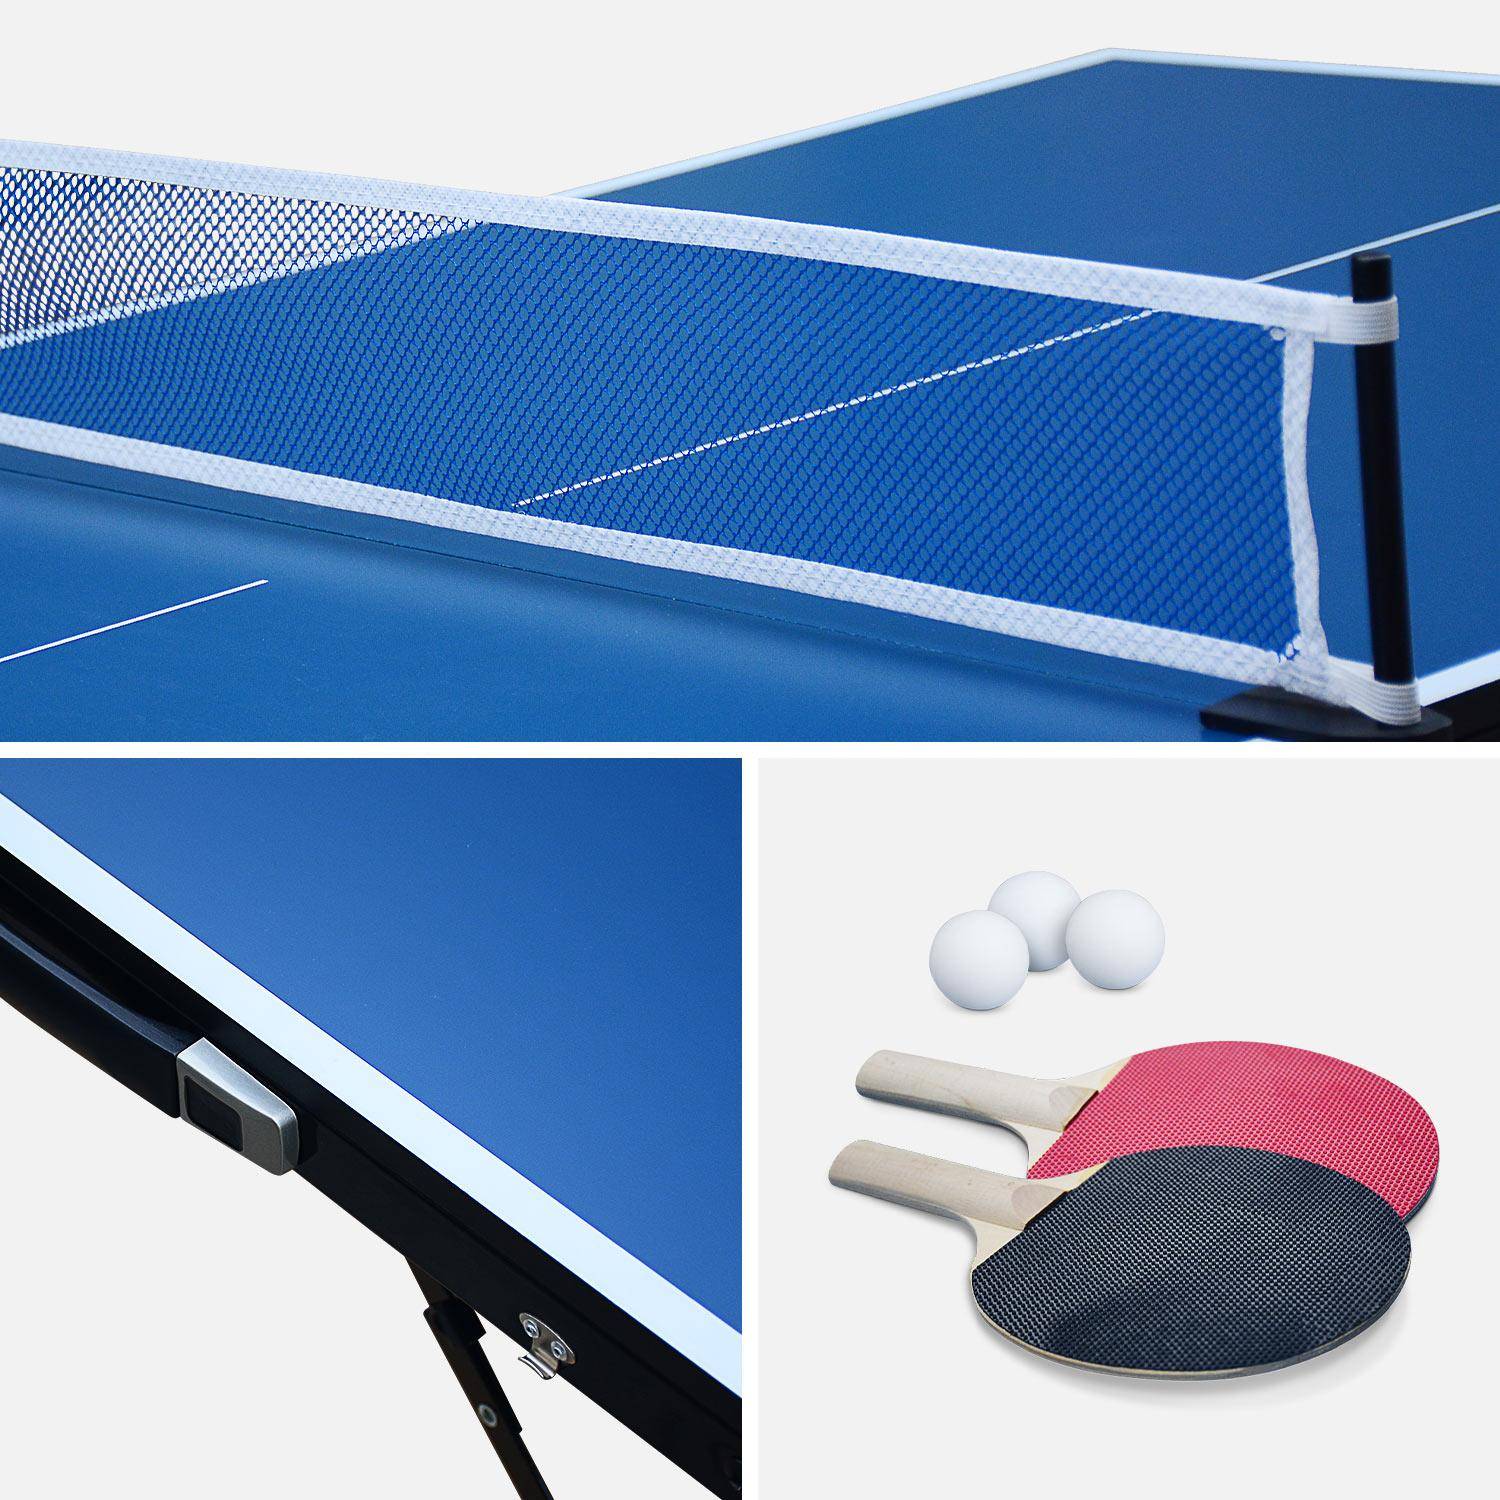 Zubehör mit klappbarer Mini-Tischtennisplatte Pong Ping INDOOR | 150x75cm sweeek blau,